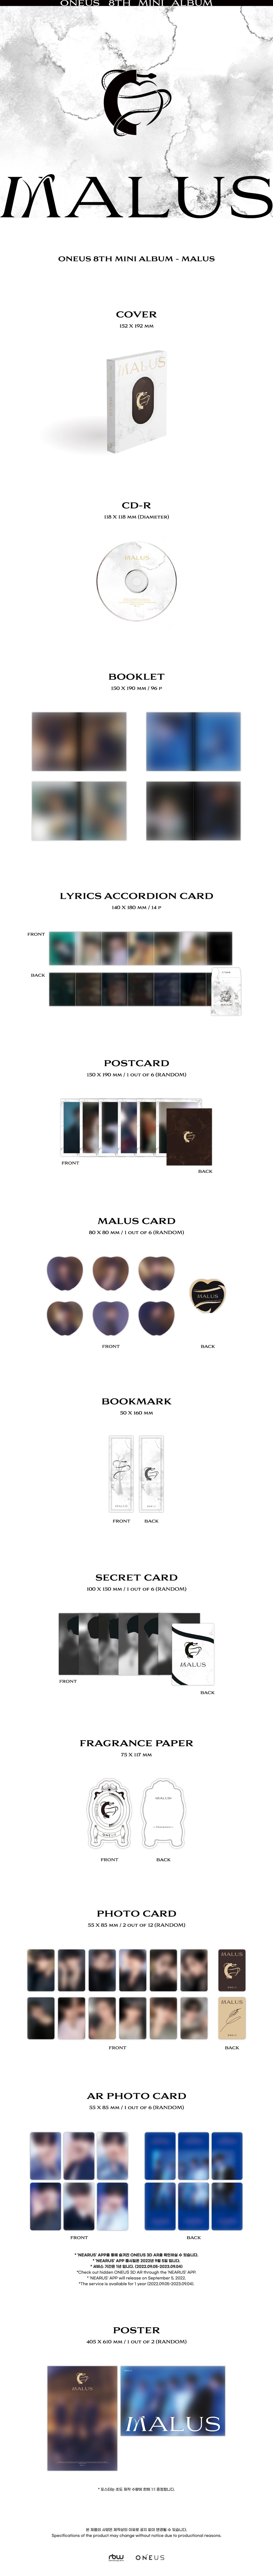 ONEUS - MALUS (8th Mini Album) メインVer.